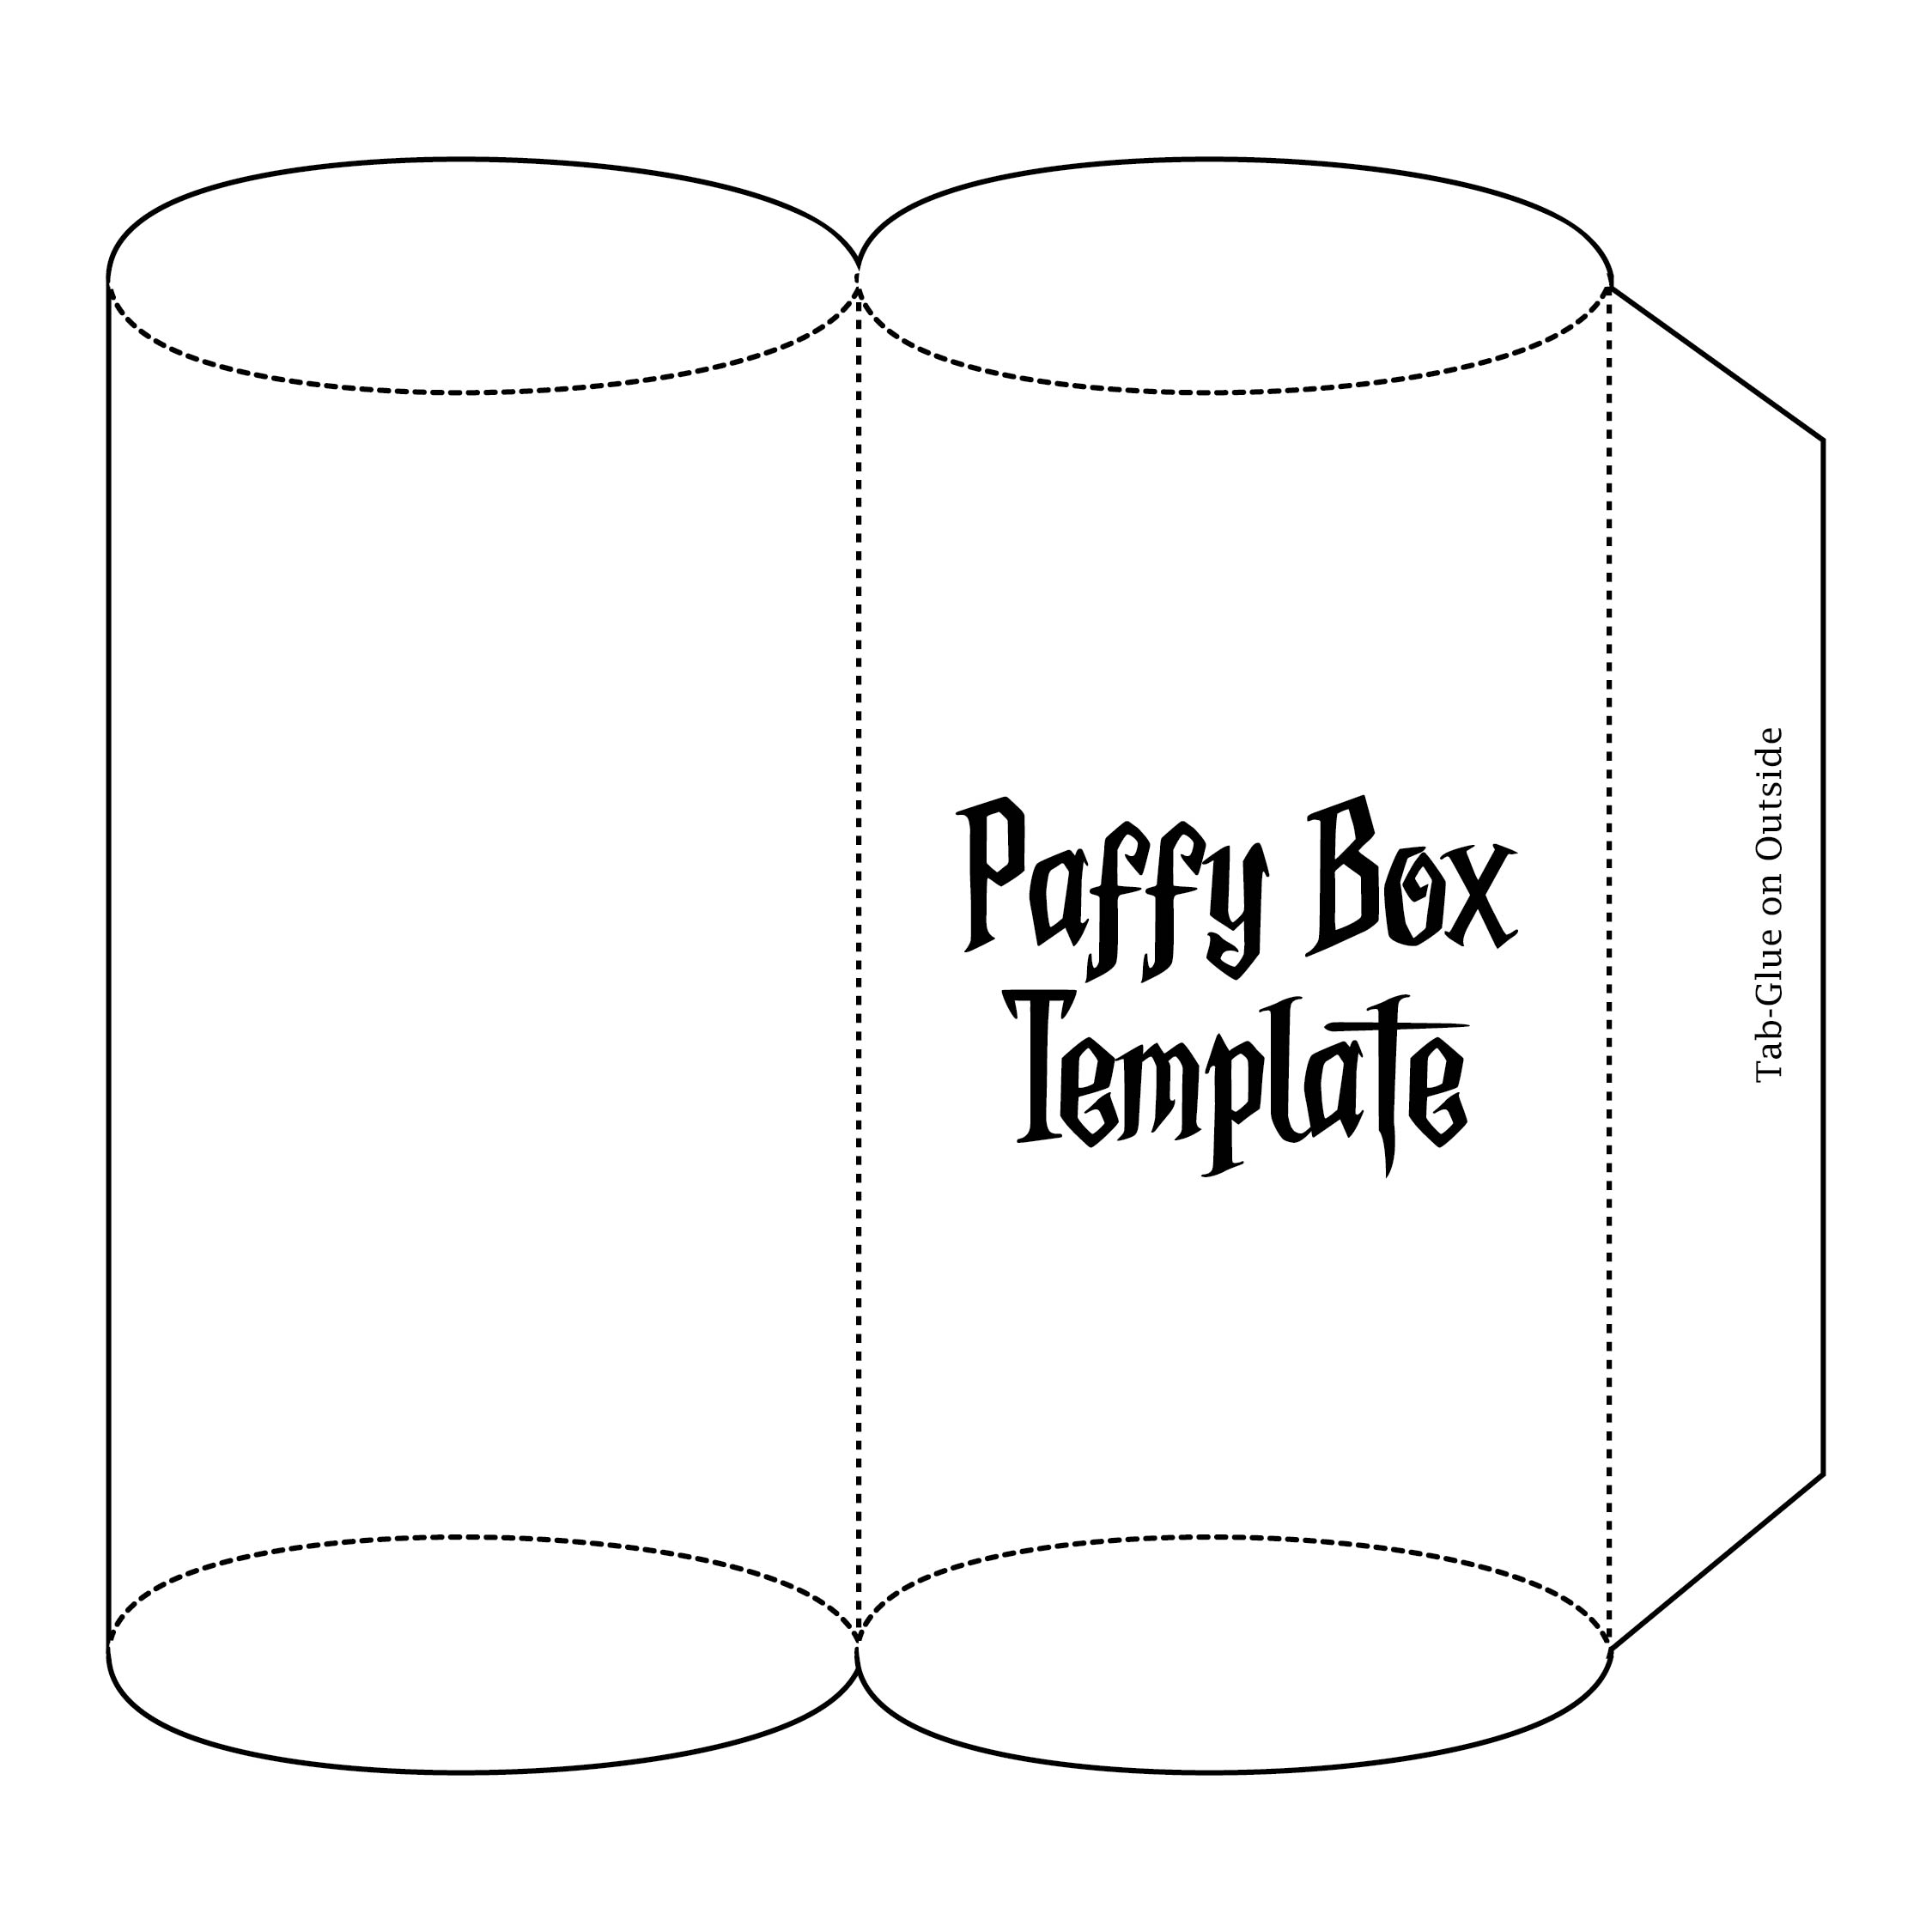 Printable Gift Box Templates